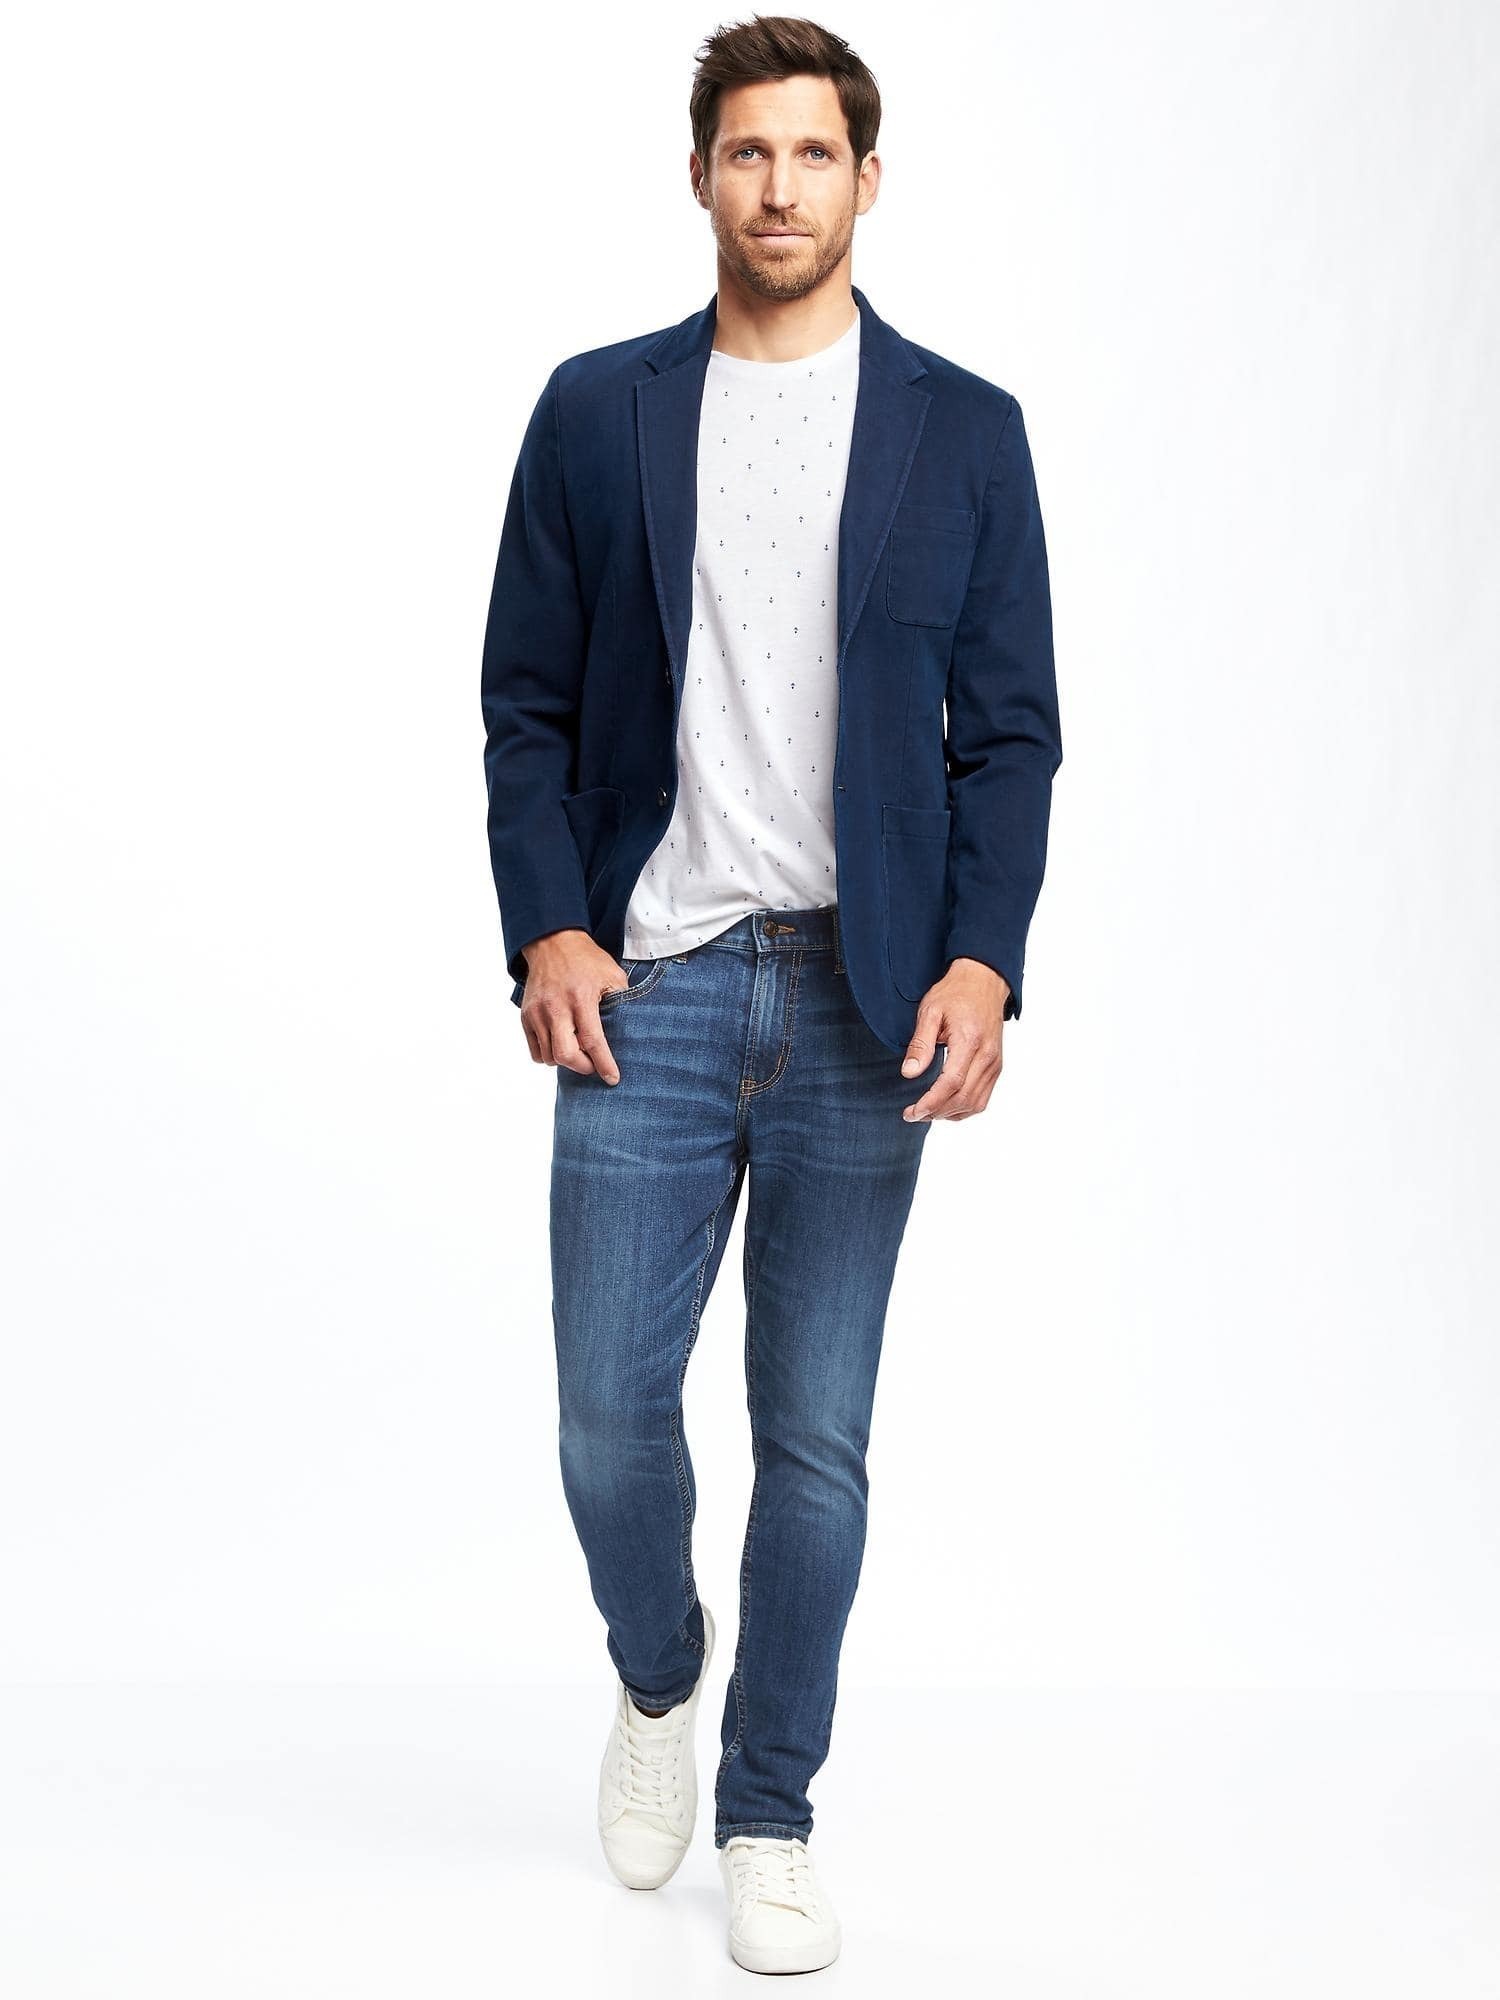 пиджак с джинсами мужские фото